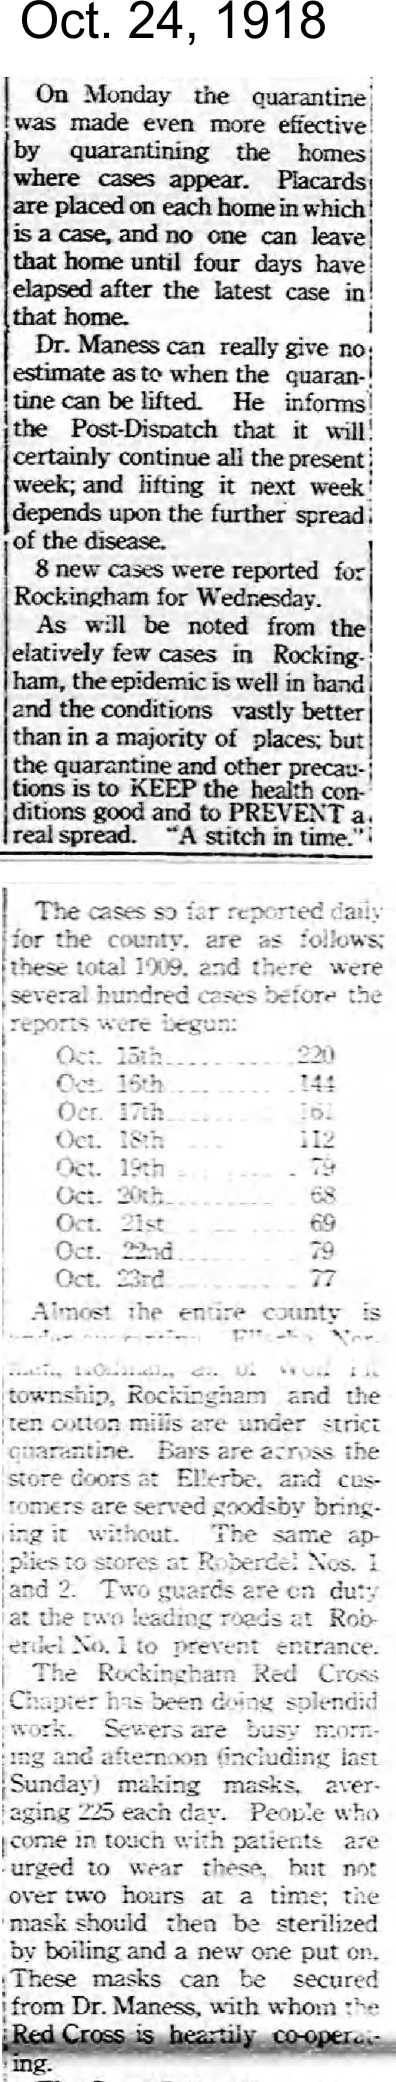 1918 Oct 24 Flu a OH.jpg